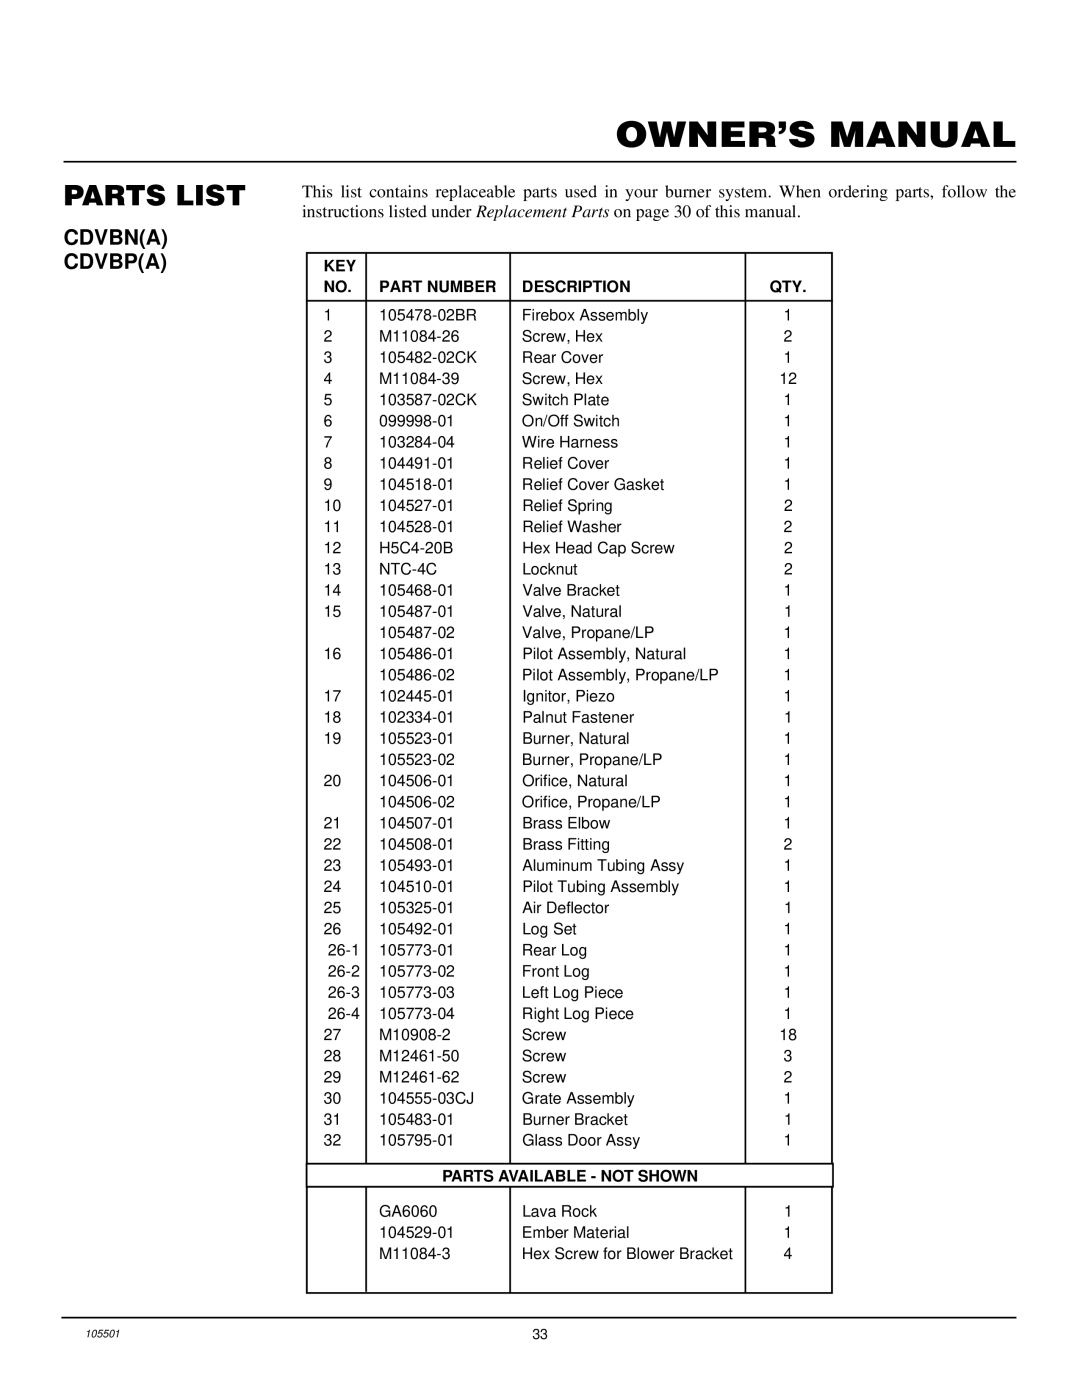 Desa CDVBN(A), CDVBP(A) installation manual Parts List, KEY Part Number Description QTY 